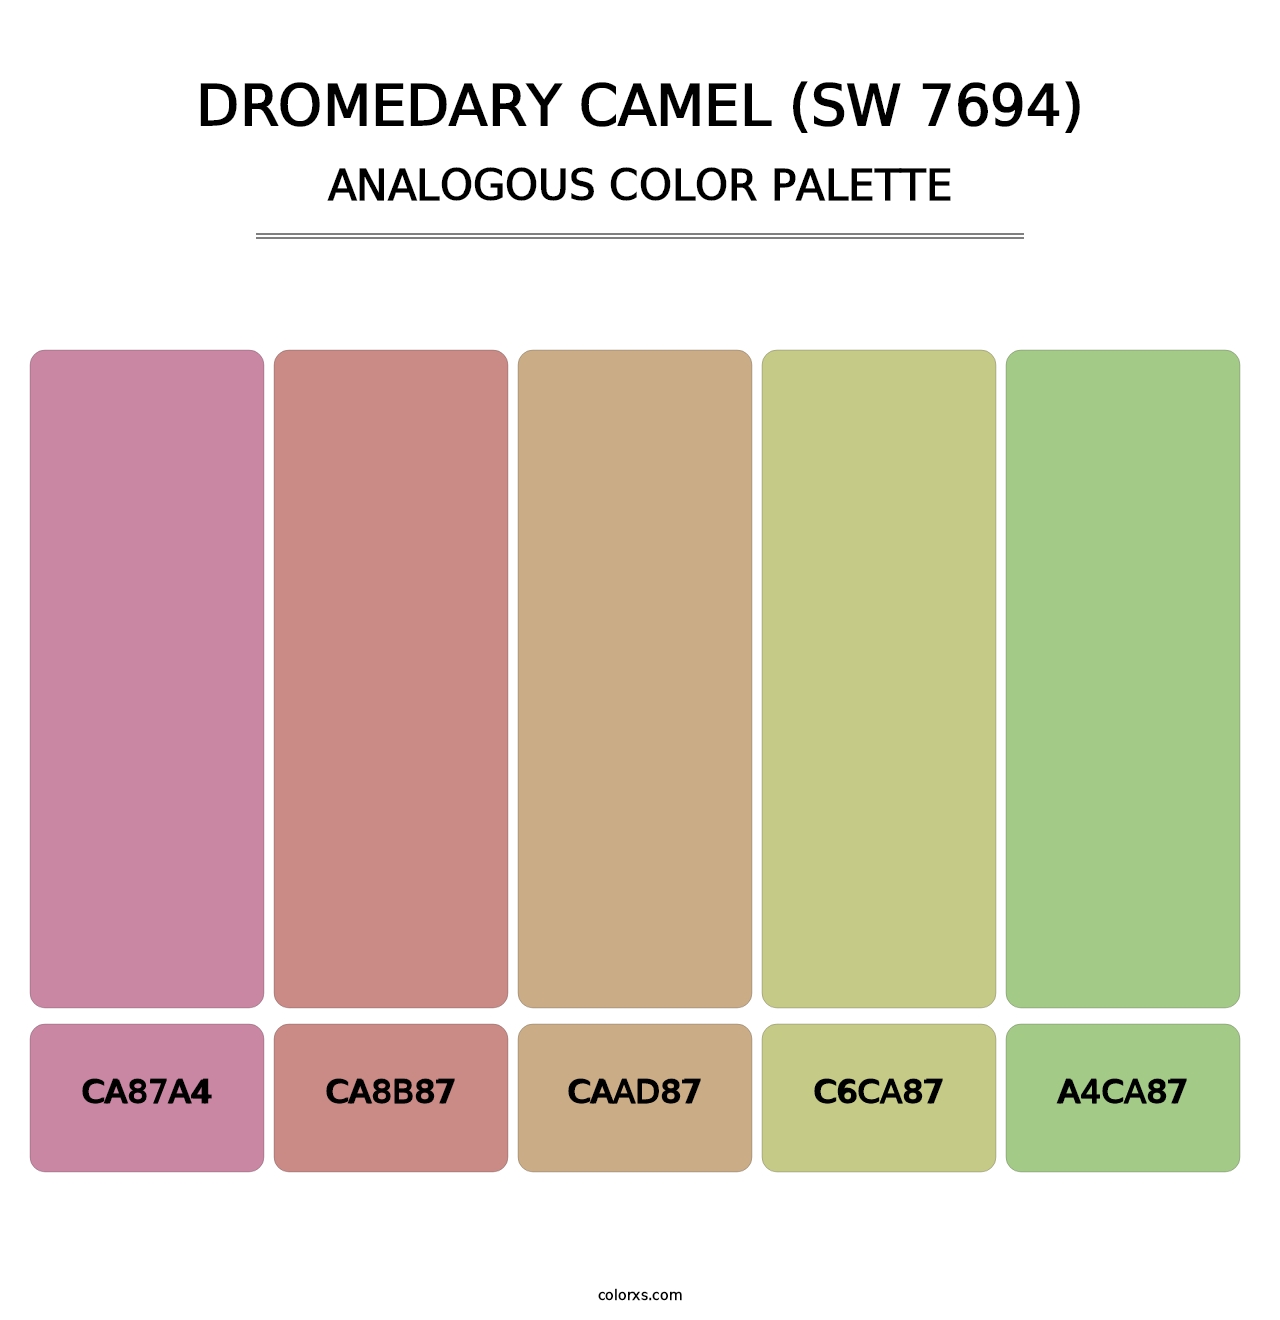 Dromedary Camel (SW 7694) - Analogous Color Palette